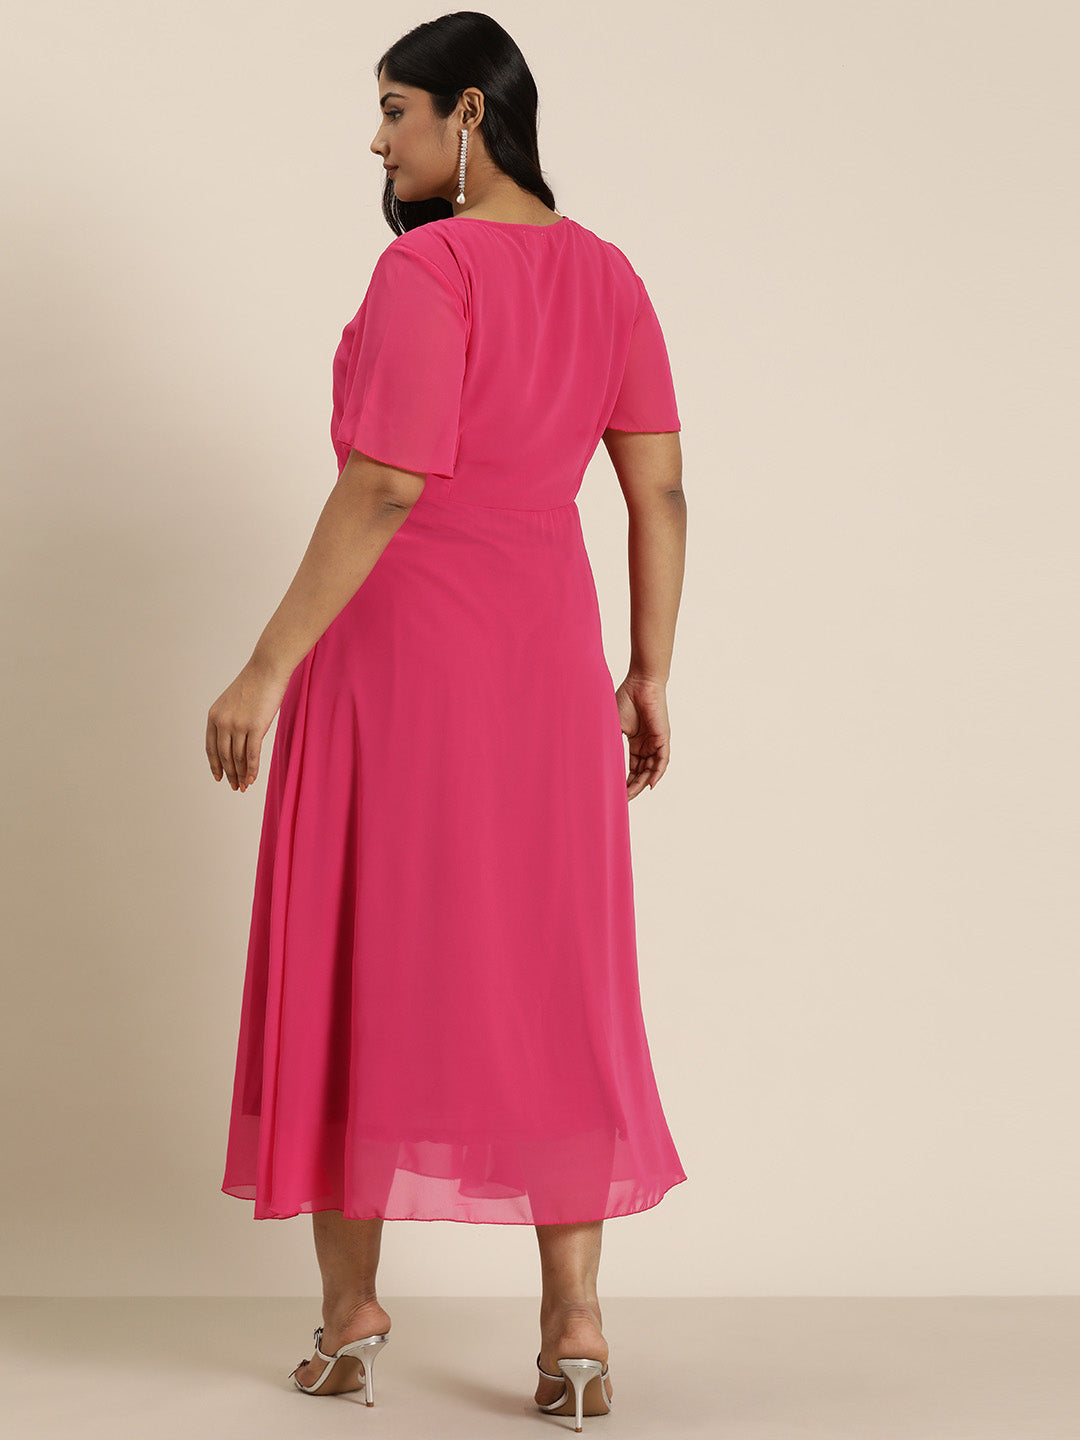 Solid Bright Magenta Regular Fit V Neck Above Elbow Length Bell Sleeve Georgette Dress